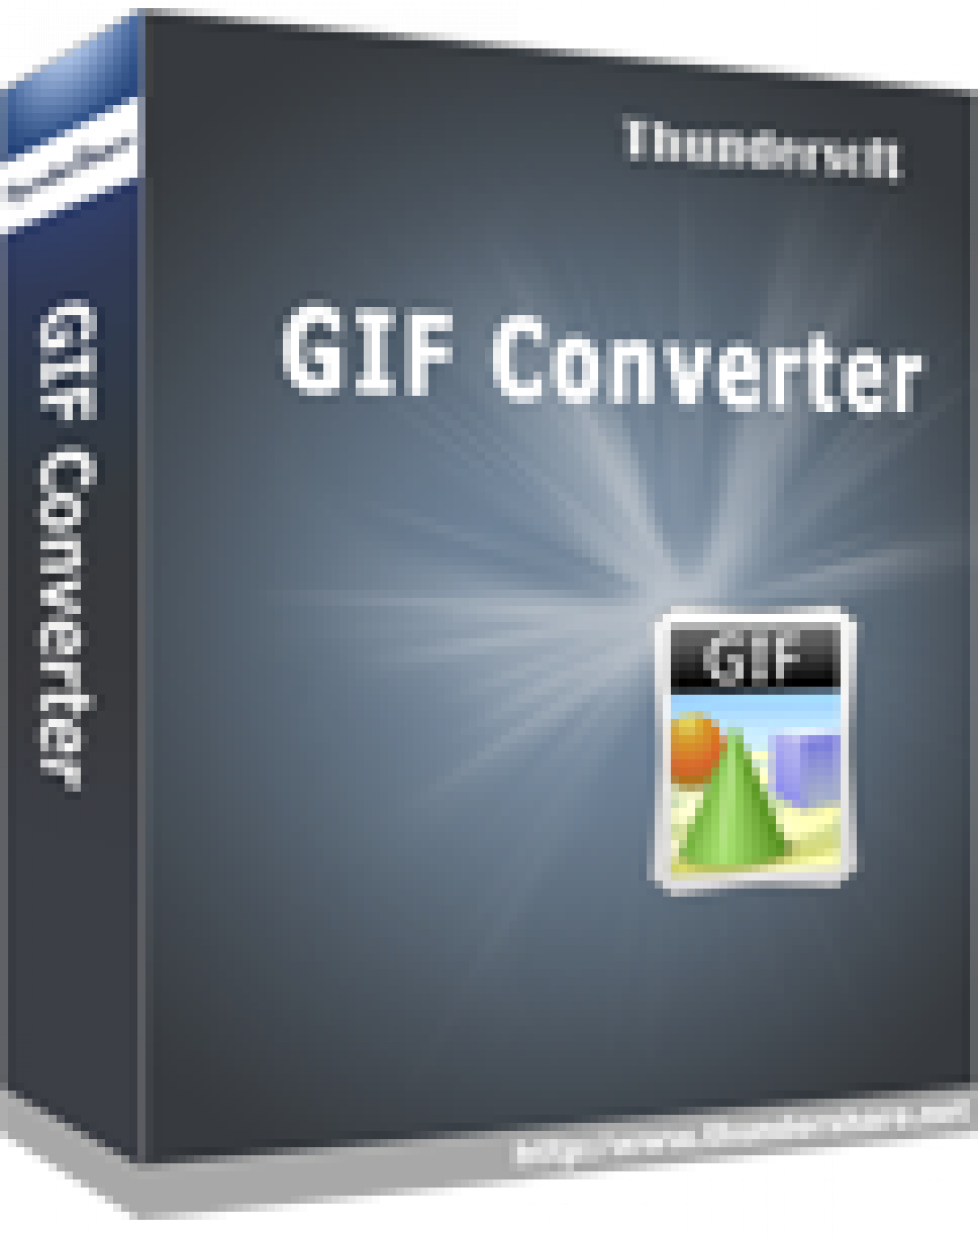 for apple instal ThunderSoft GIF Converter 5.2.0